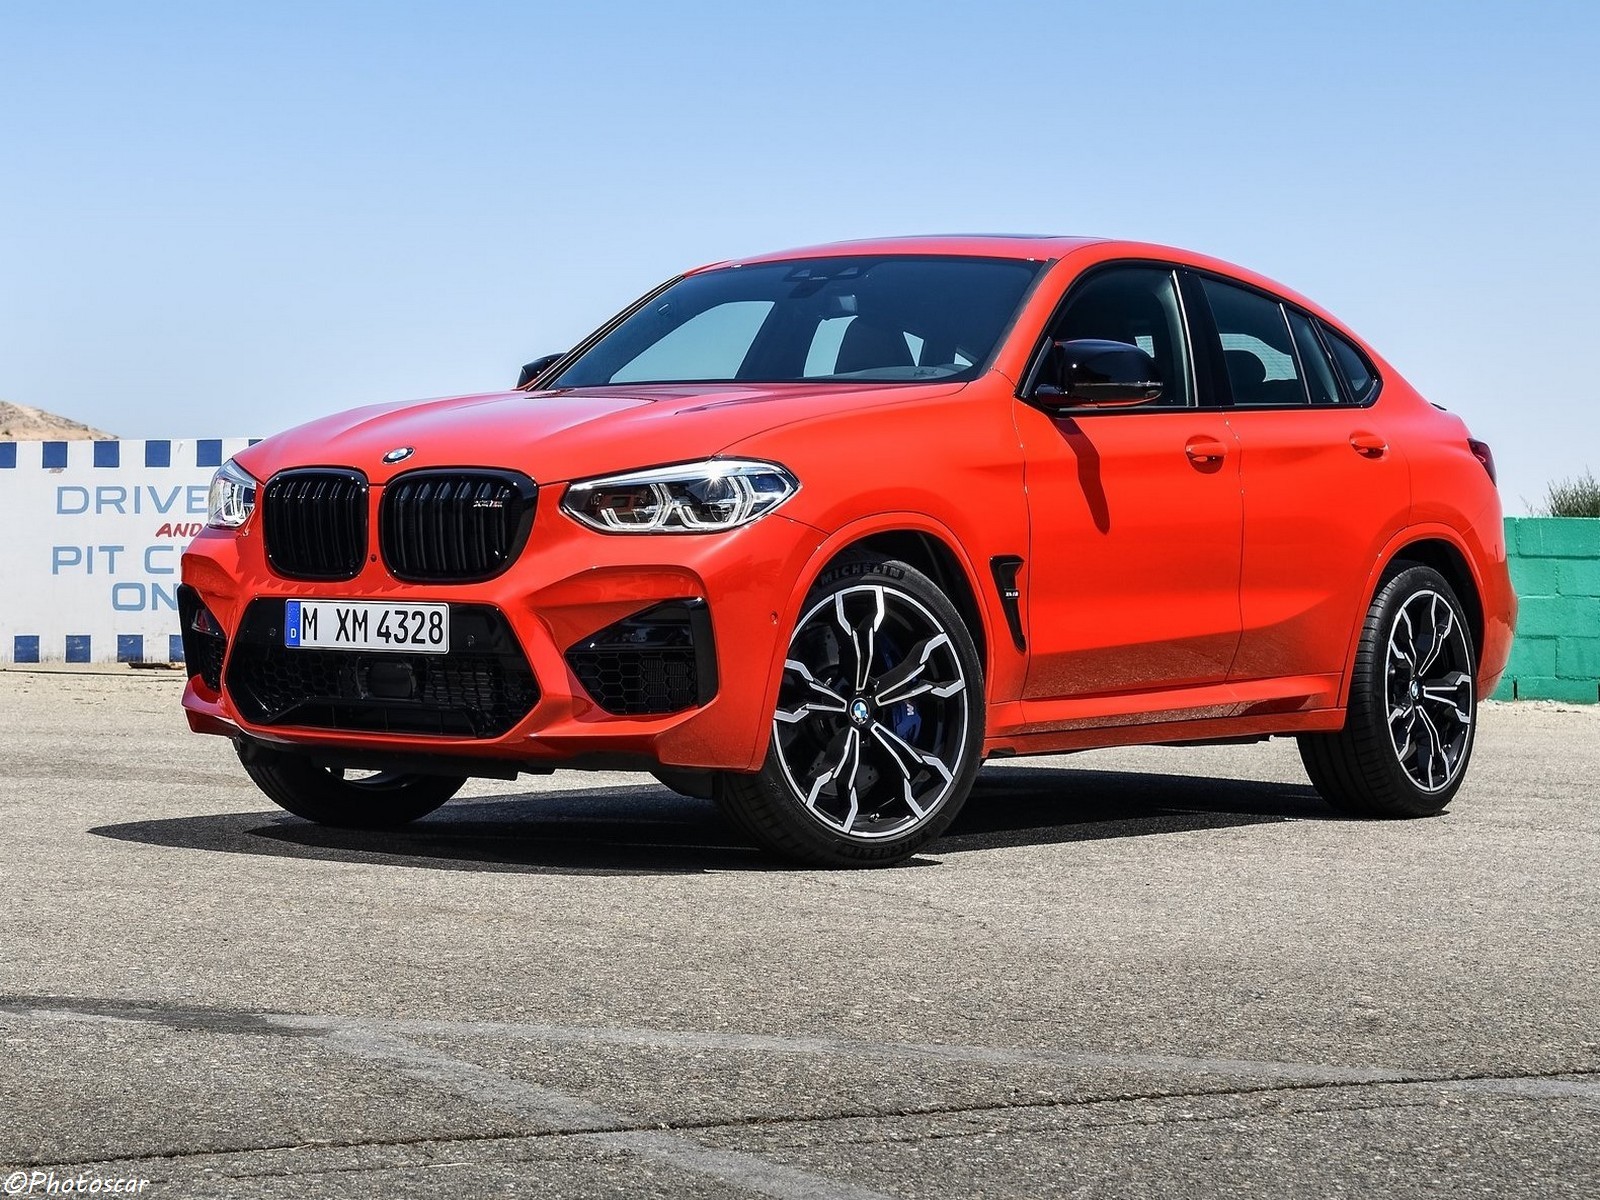 BMW X4 M Competition 2020 offrent un équilibre impressionnant entre performances, confort et efficacité